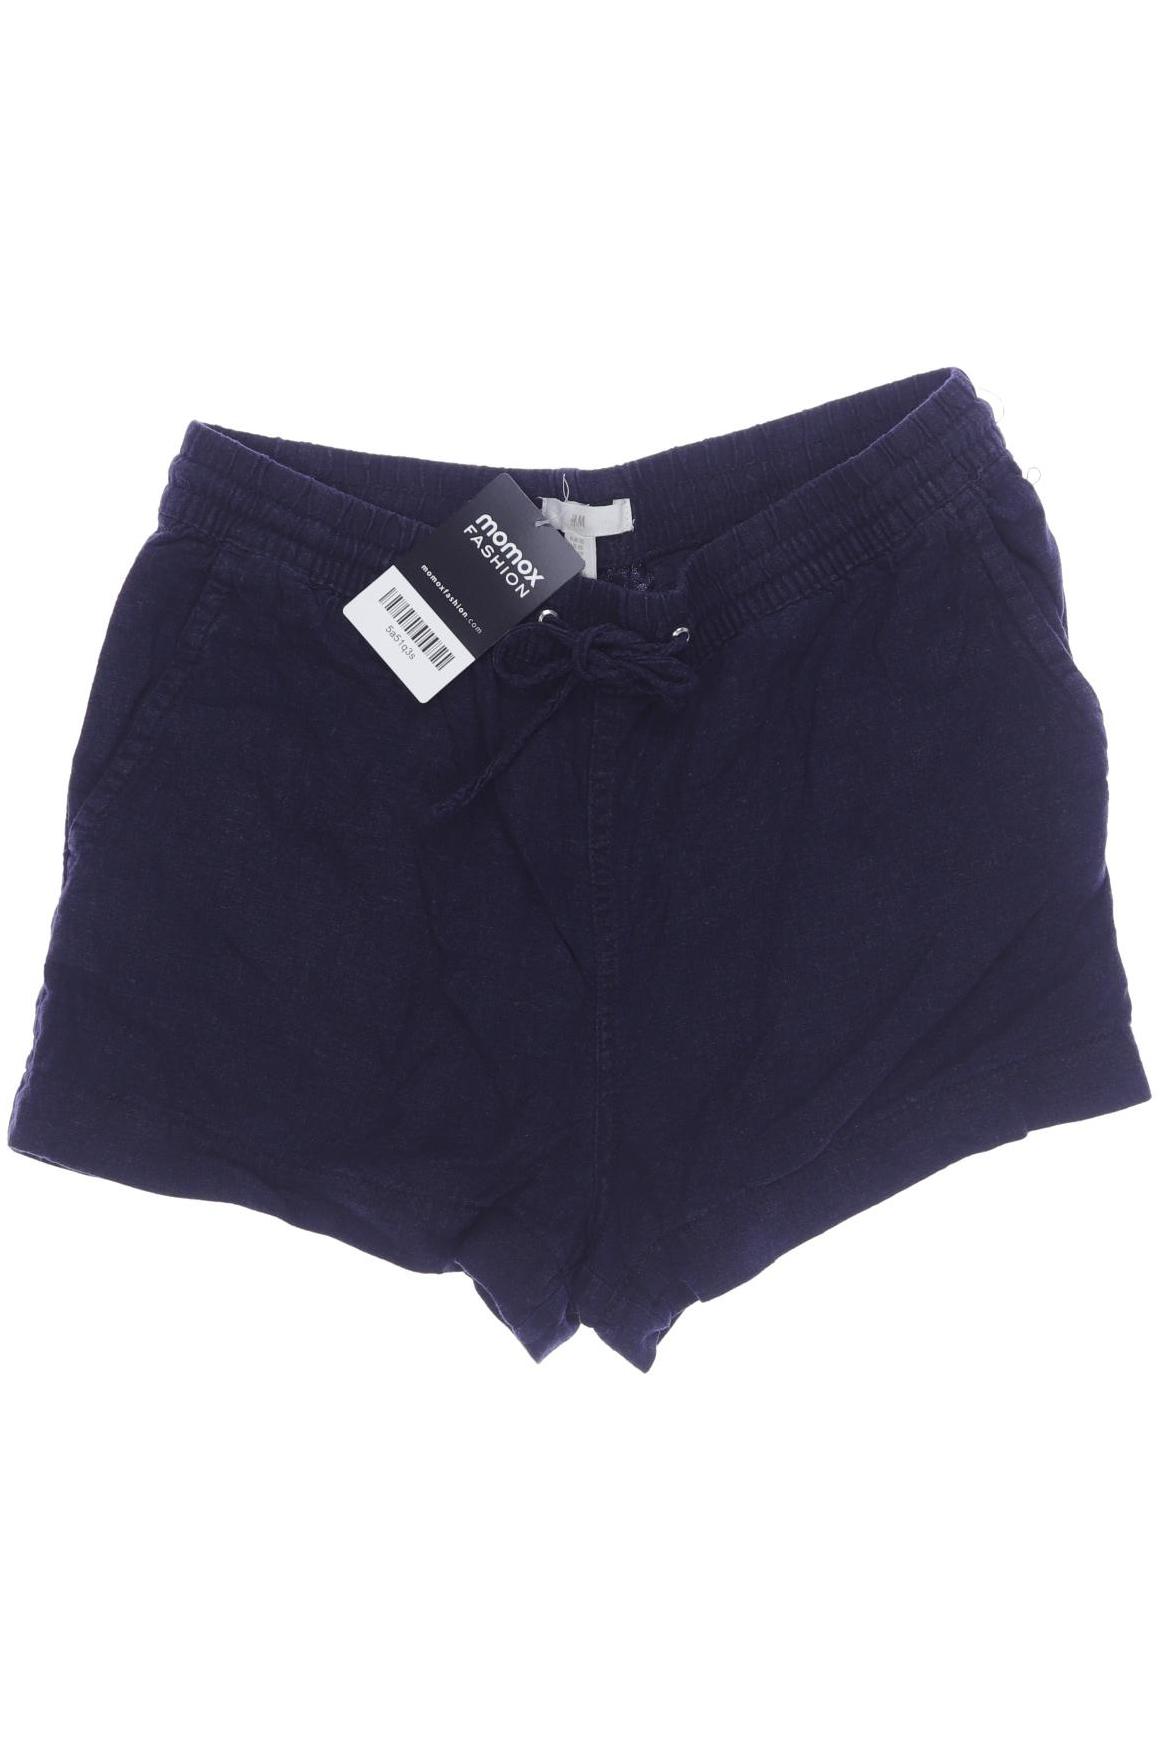 H&M Damen Shorts, marineblau, Gr. 34 von H&M